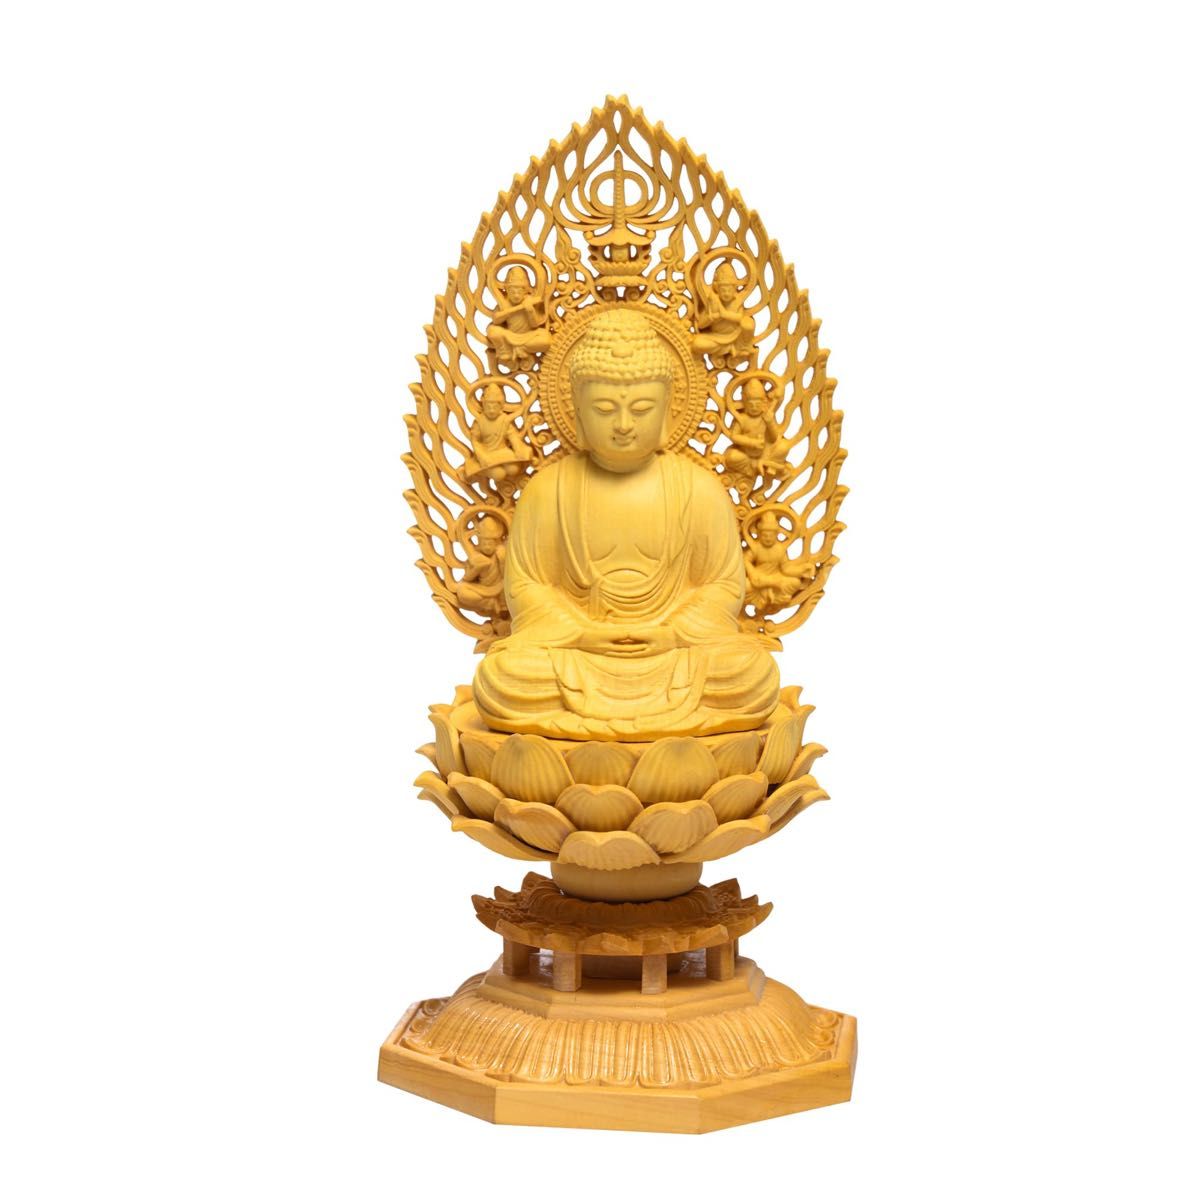 仏像 木彫り 置物 釈迦如来   厄除け 柘植の木 飛天光背 八角台座　仏像 精密彫刻 工芸品 木彫仏教